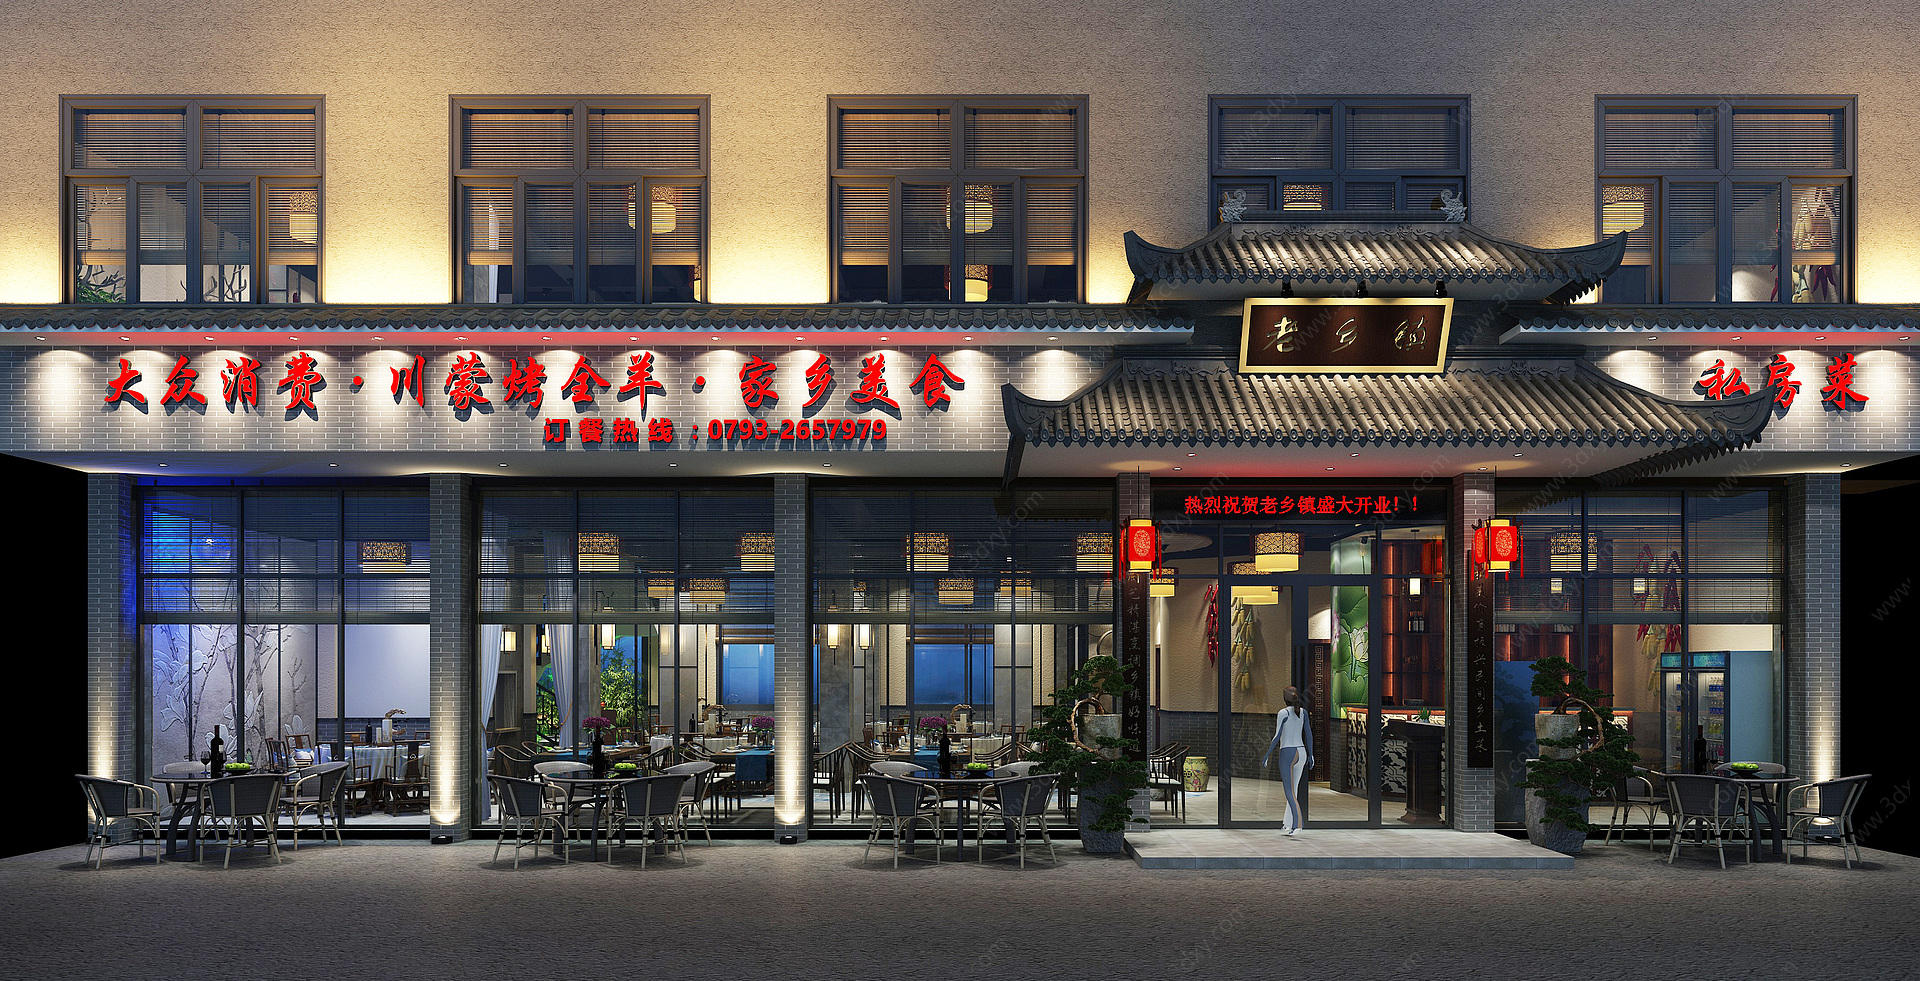 中式餐厅门头牌匾3D模型